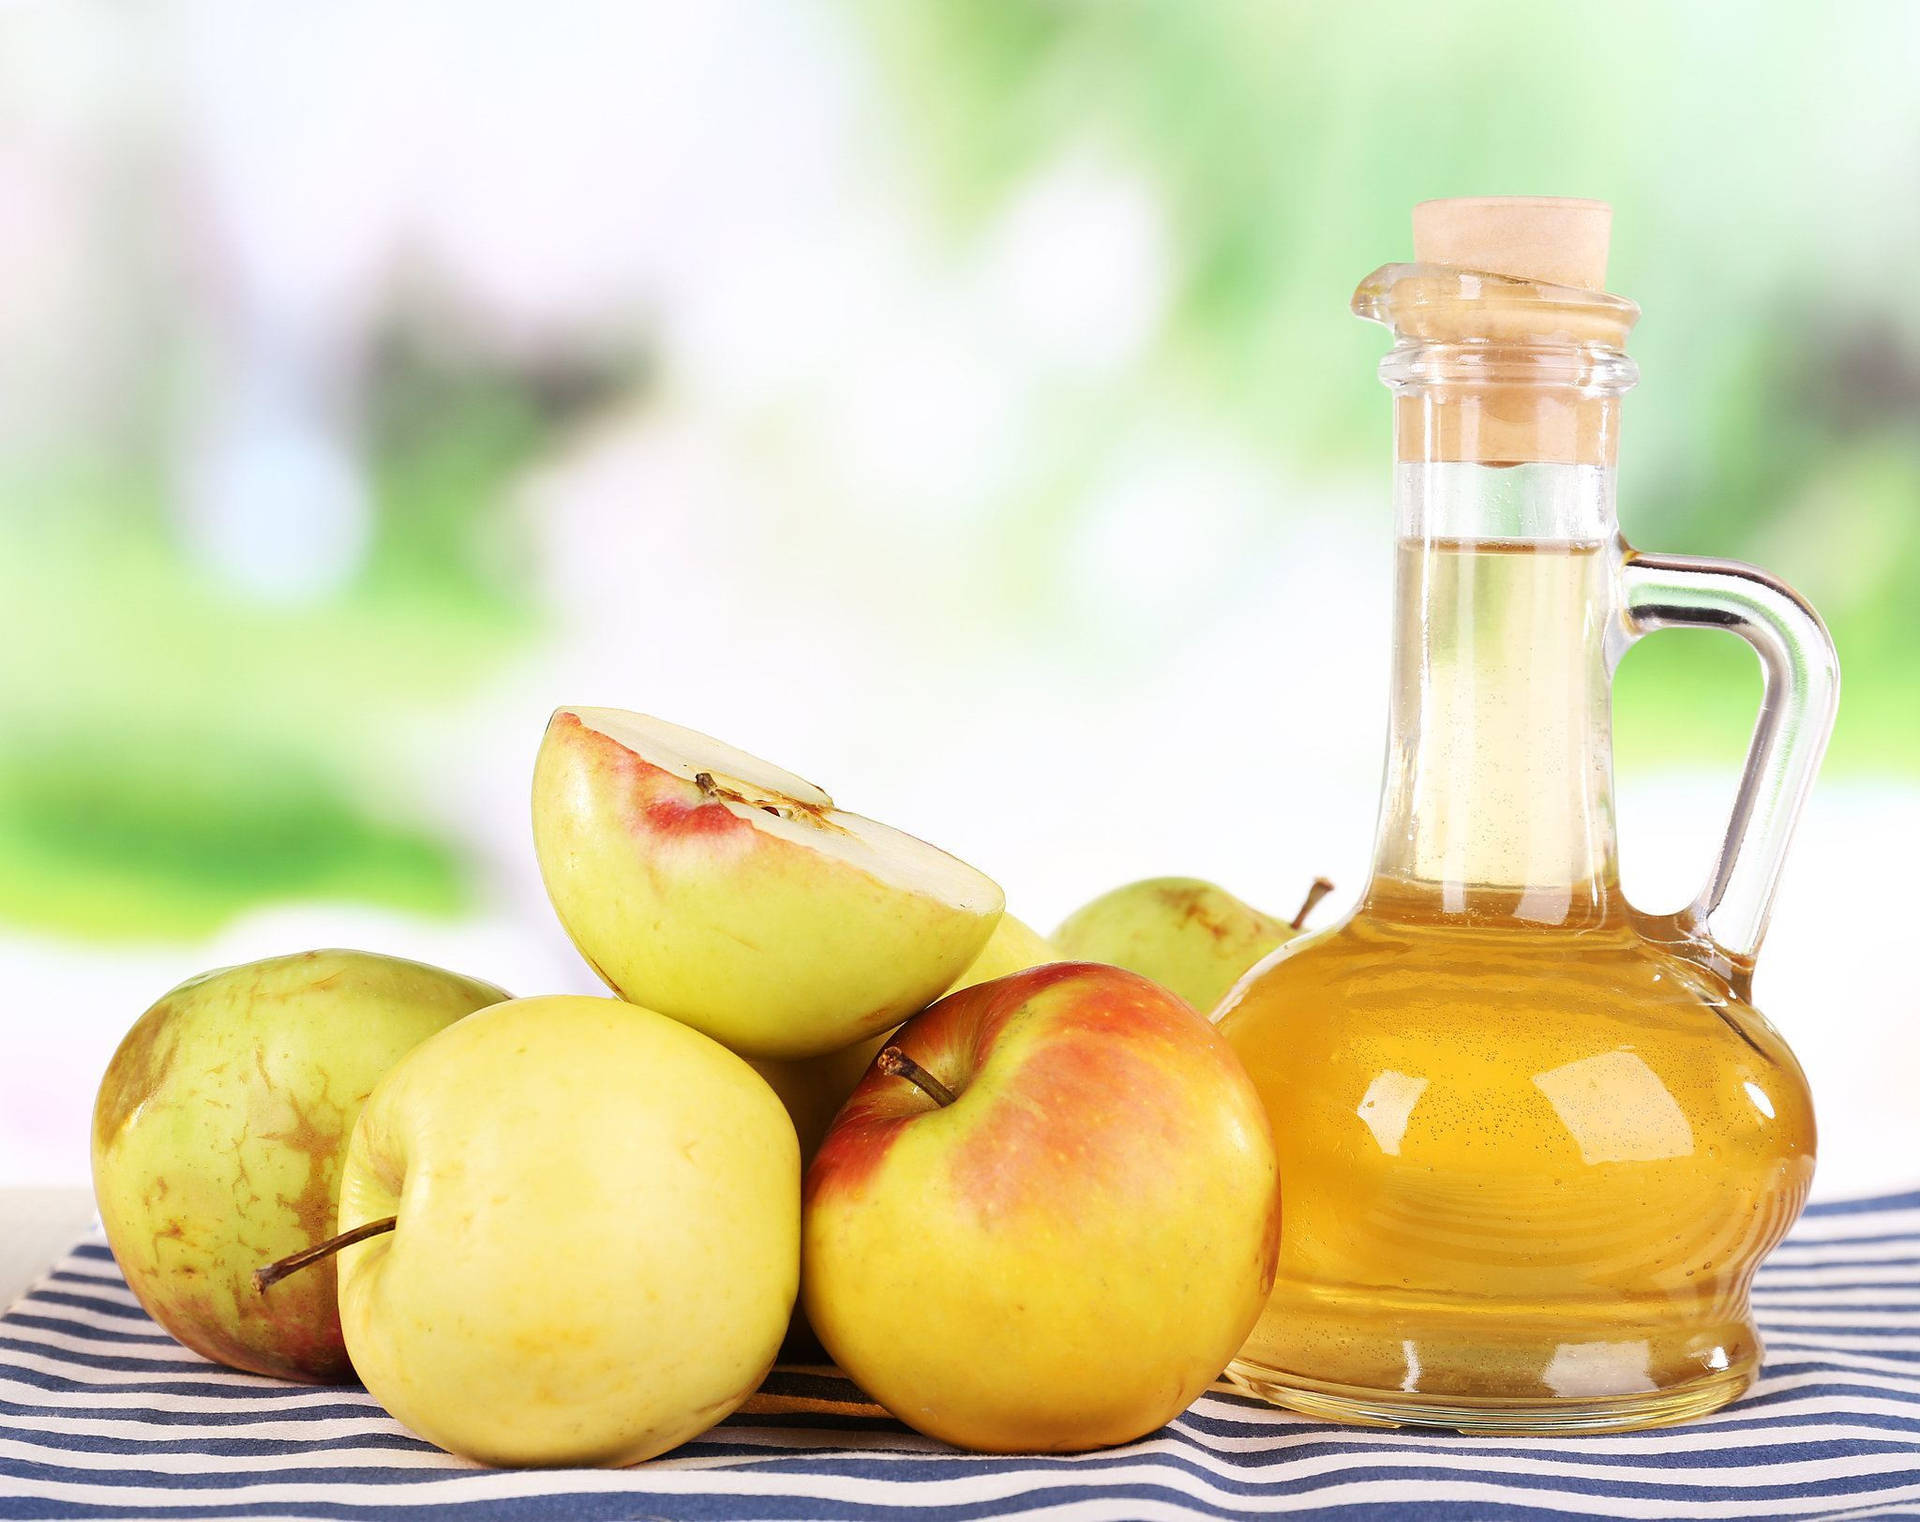 Apple Fruits And Apple Cider Vinegar Background